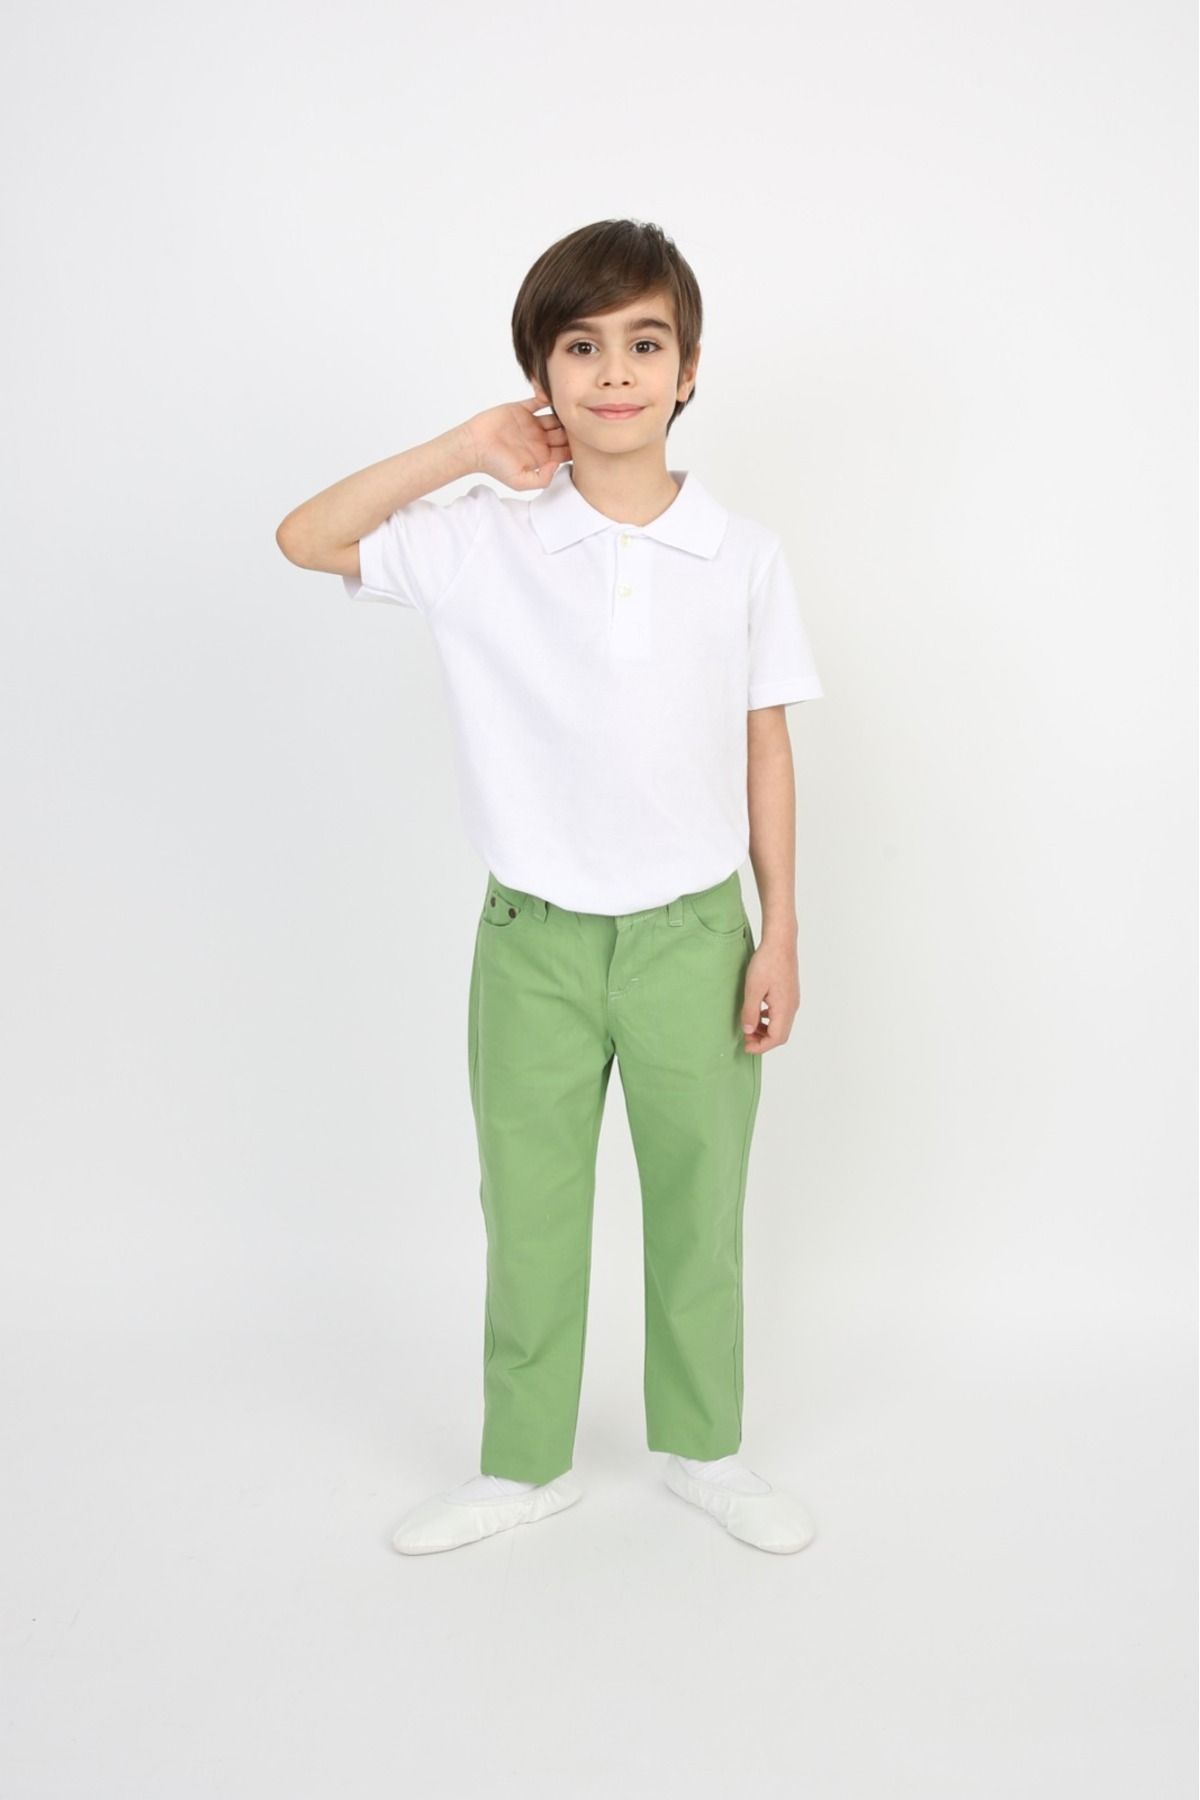 FATELLA Erkek Çocuk Polo Yaka Pantolon Takım 23 Nisan 29 Ekim Gösteri Kıyafeti